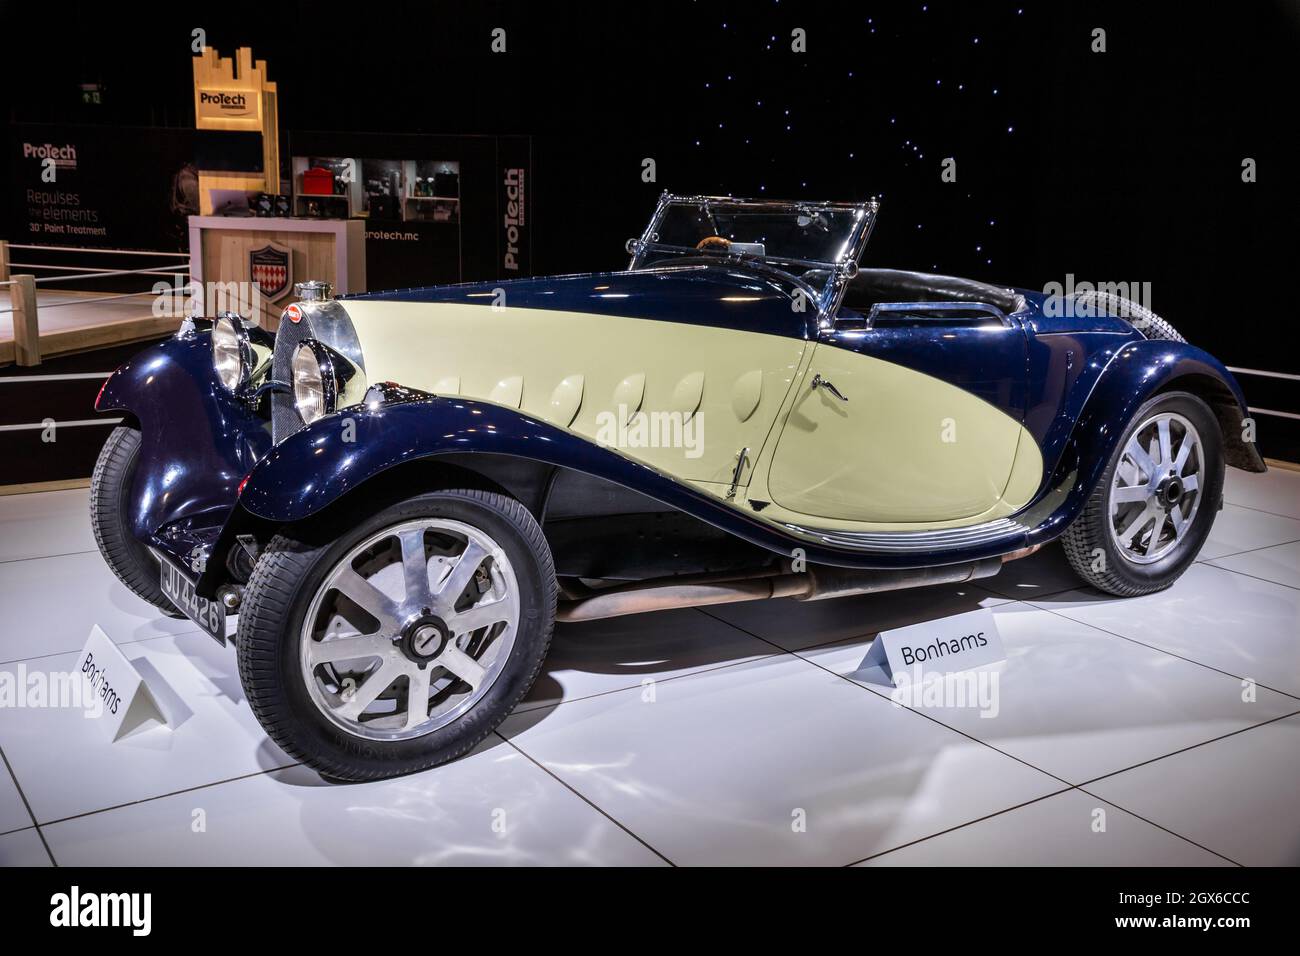 1932 Bugatti Tipo 55 Automóvil clásico Roadster presentado en el Autosalon 2020 Motor Show. Bruselas, Bélgica - 9 de enero de 2020. Foto de stock